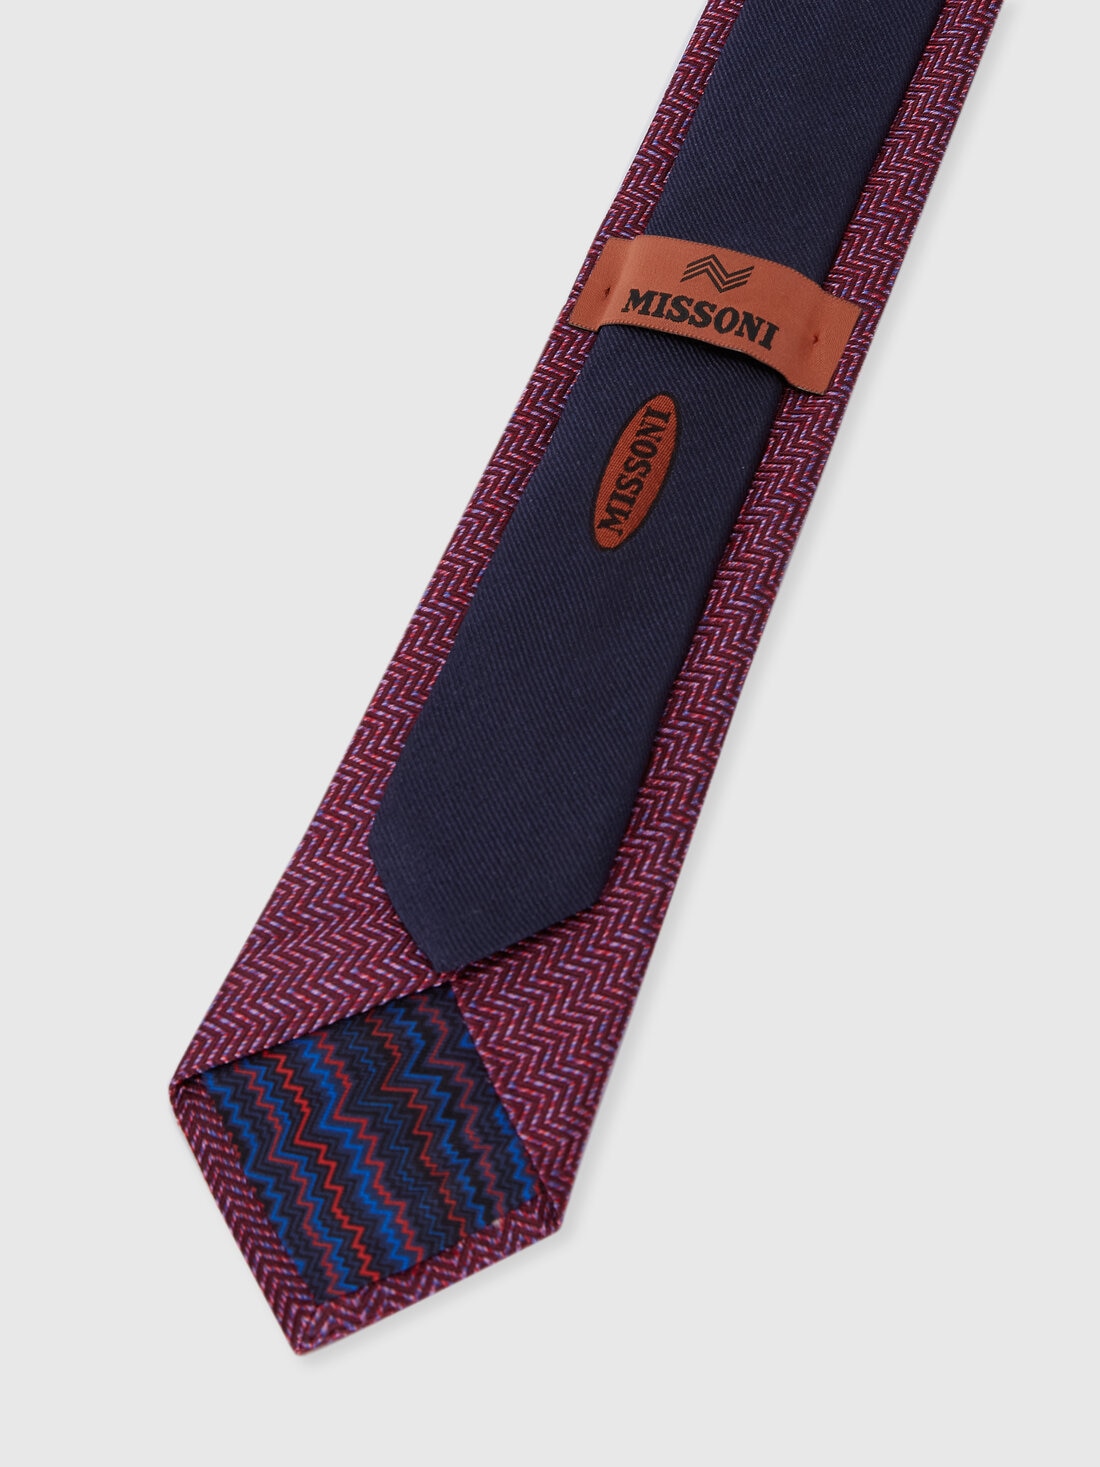 Cravatta in seta chevron, Multicolore  - 8053147141947 - 2